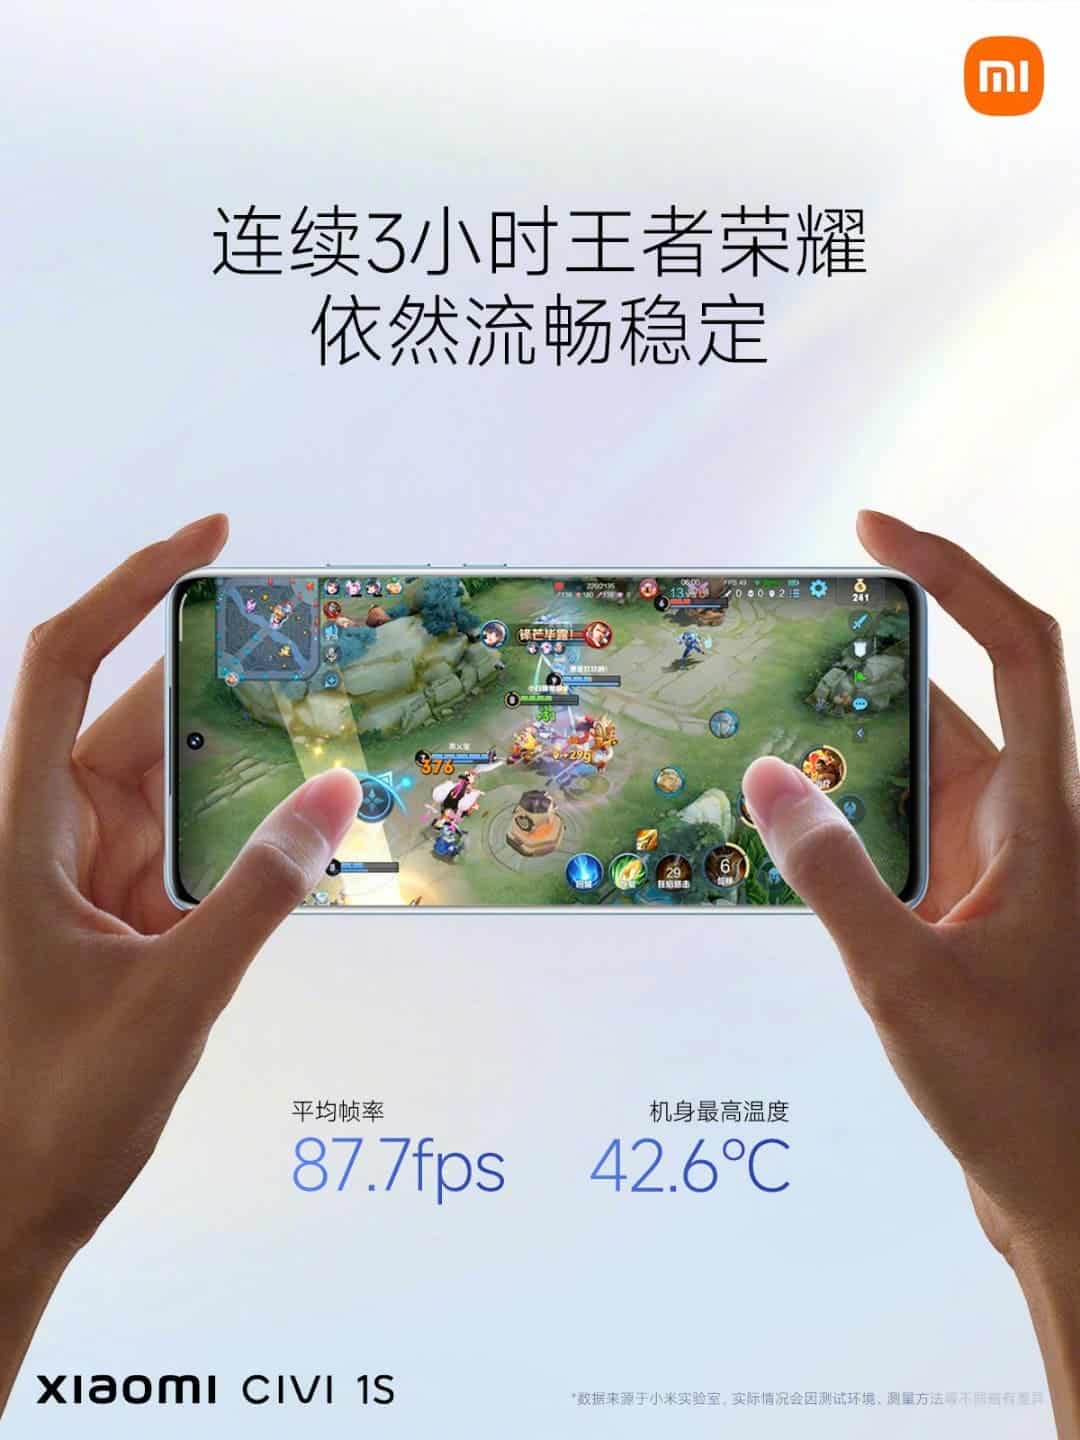 Xiaomi Civi 1S gaming